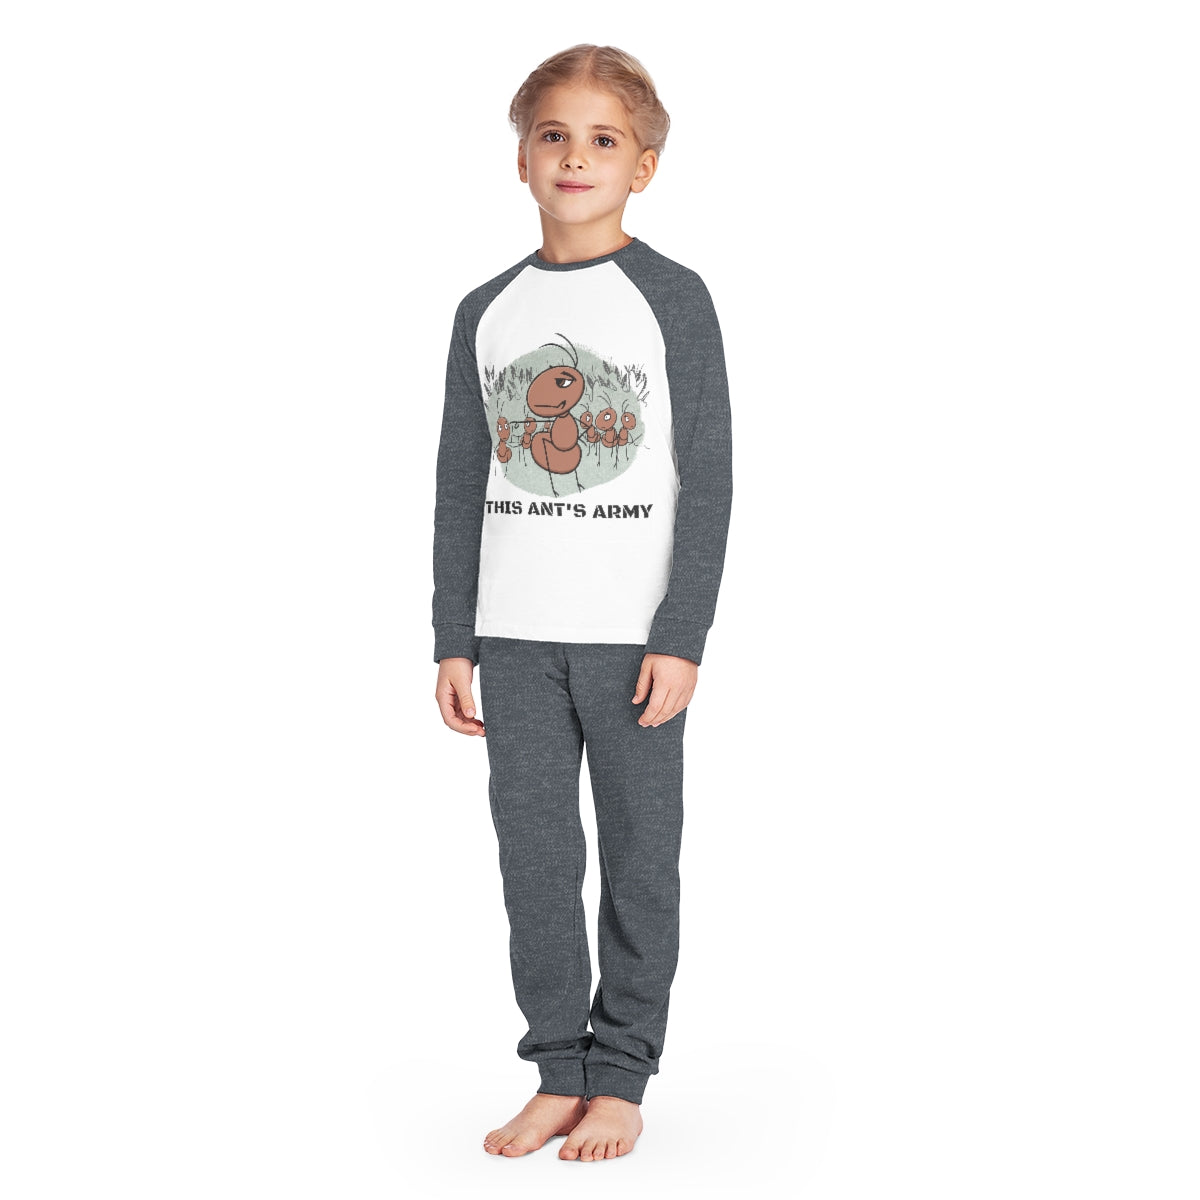 Ant's Army - Kids' Pajama Set